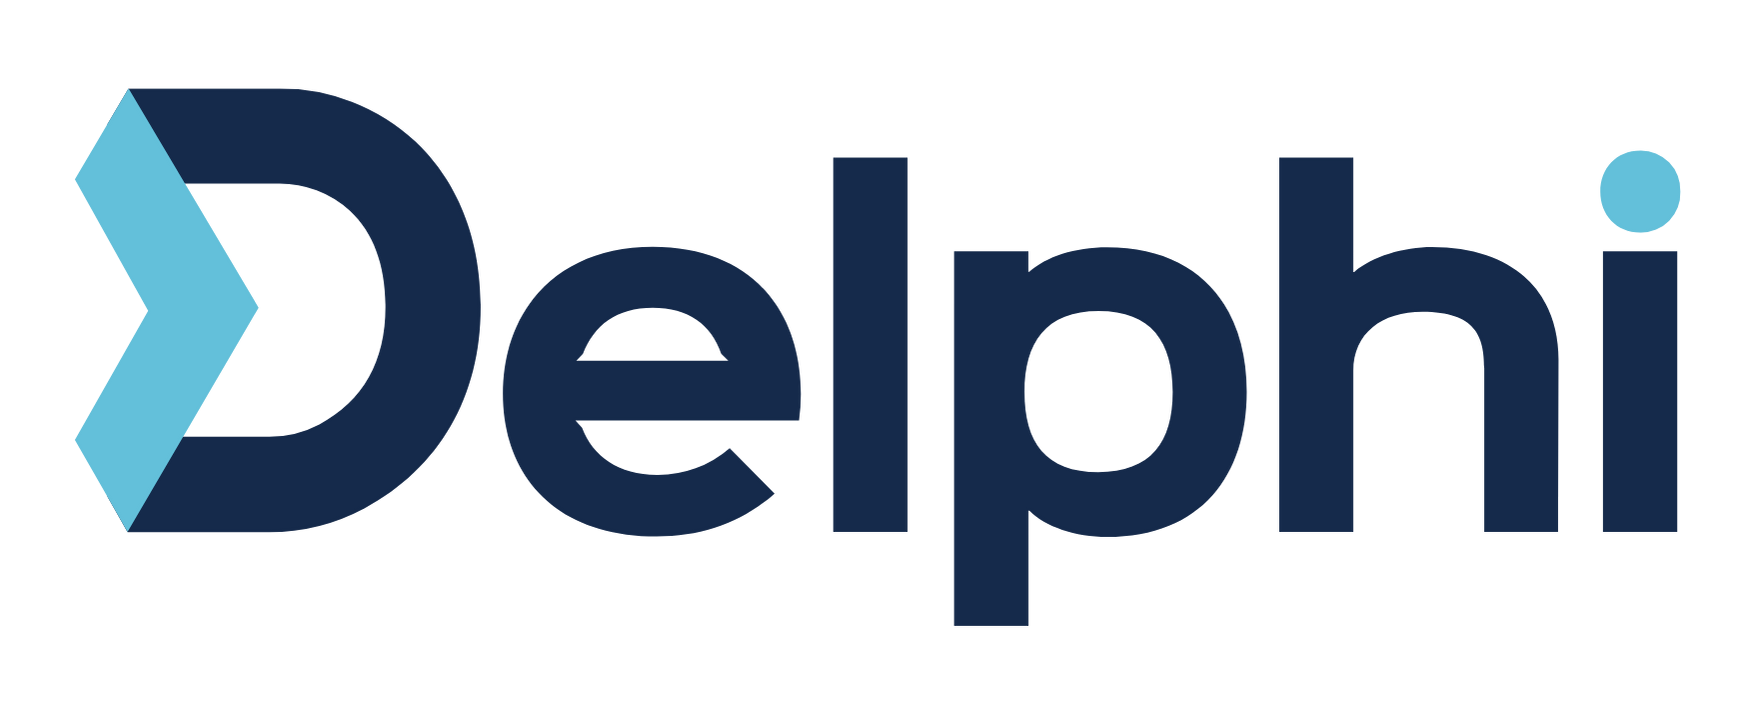 Delphi - Simplify Healthcare.